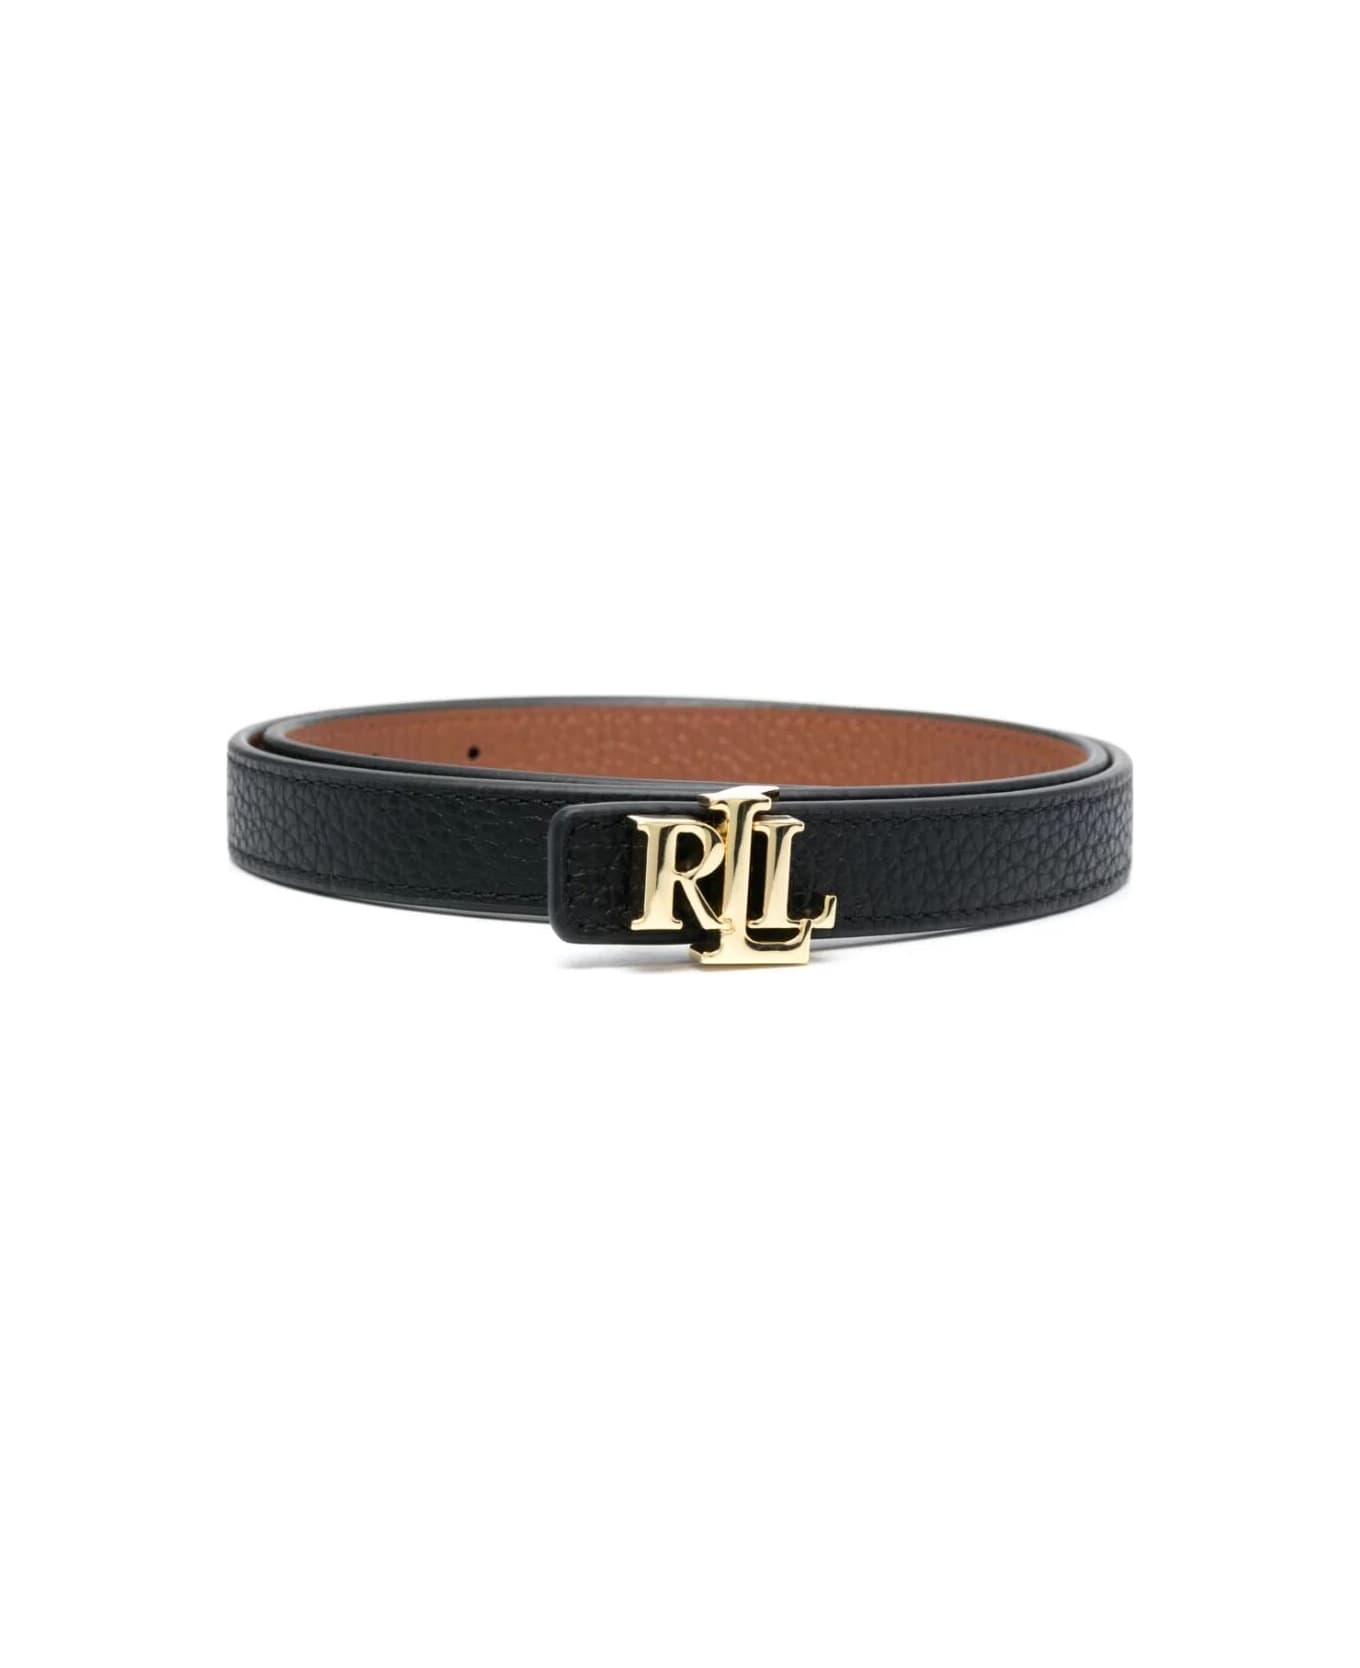 Ralph Lauren Rev Lrl 20 Skinny Belt - Black Lauren Tan